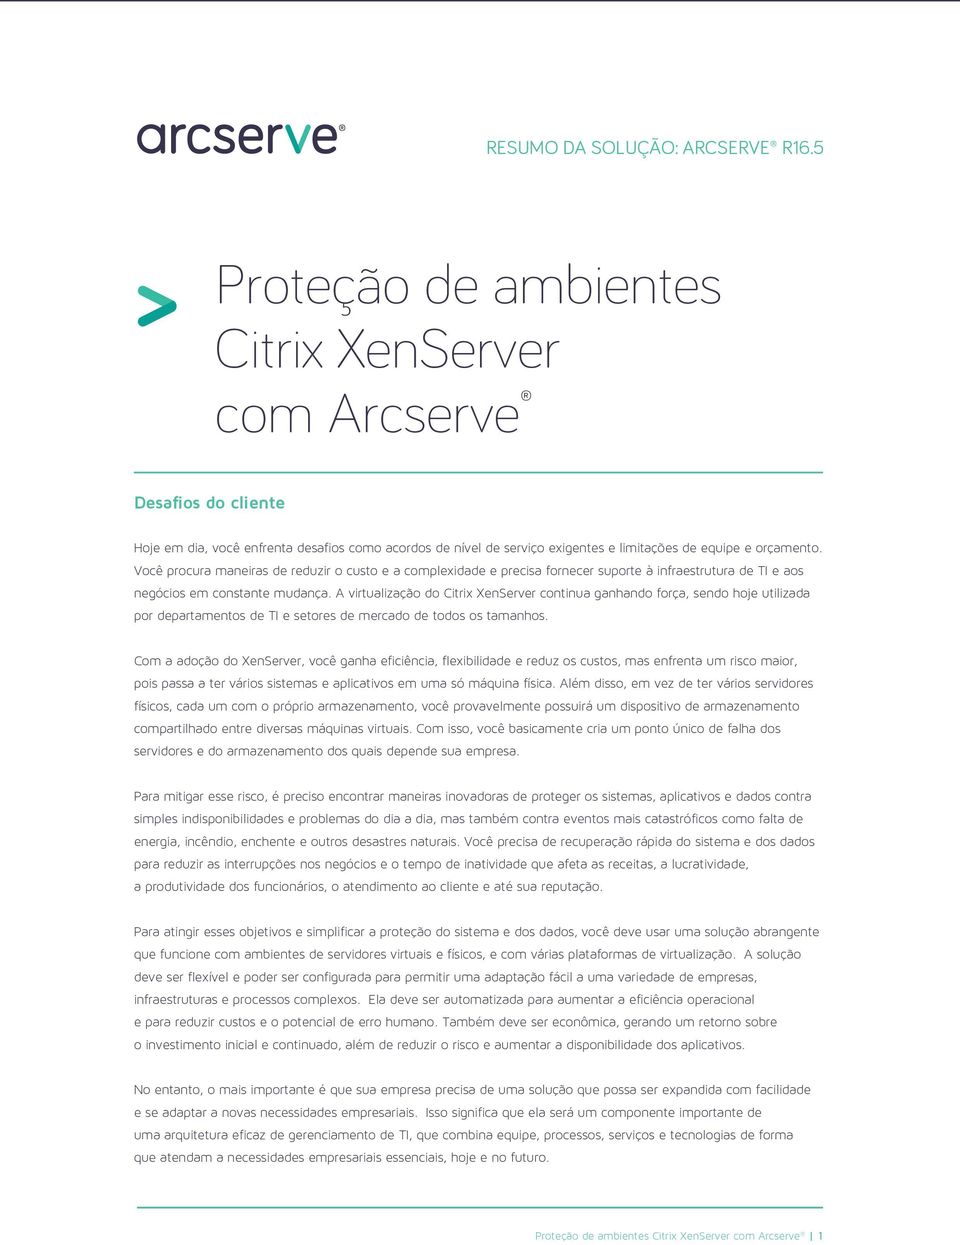 A virtualização do Citrix XenServer continua ganhando força, sendo hoje utilizada por departamentos de TI e setores de mercado de todos os tamanhos.